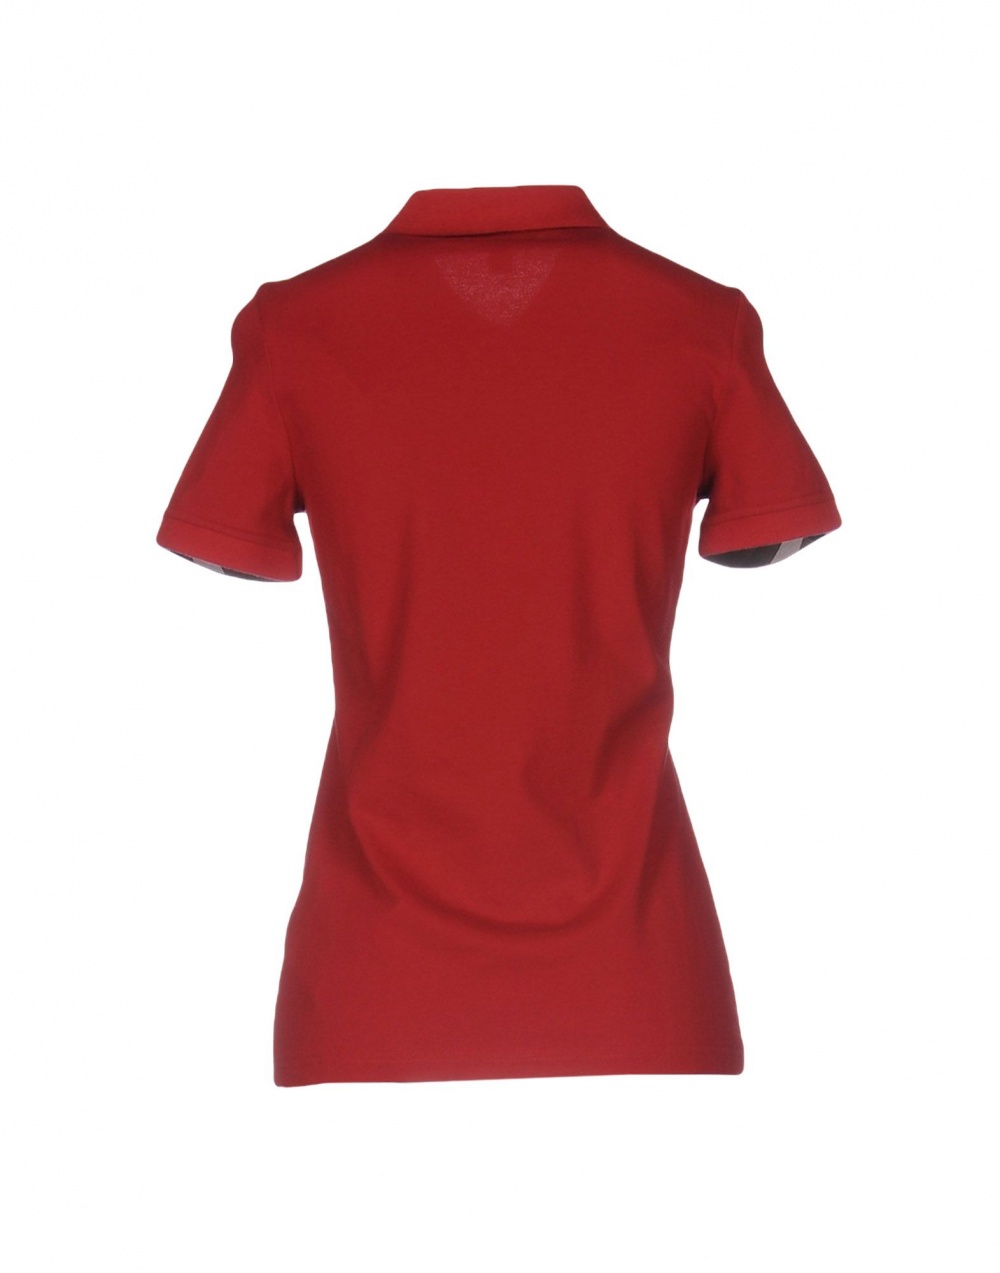 Женская рубашка поло BURBERRY, размер L, на рос. 46-48